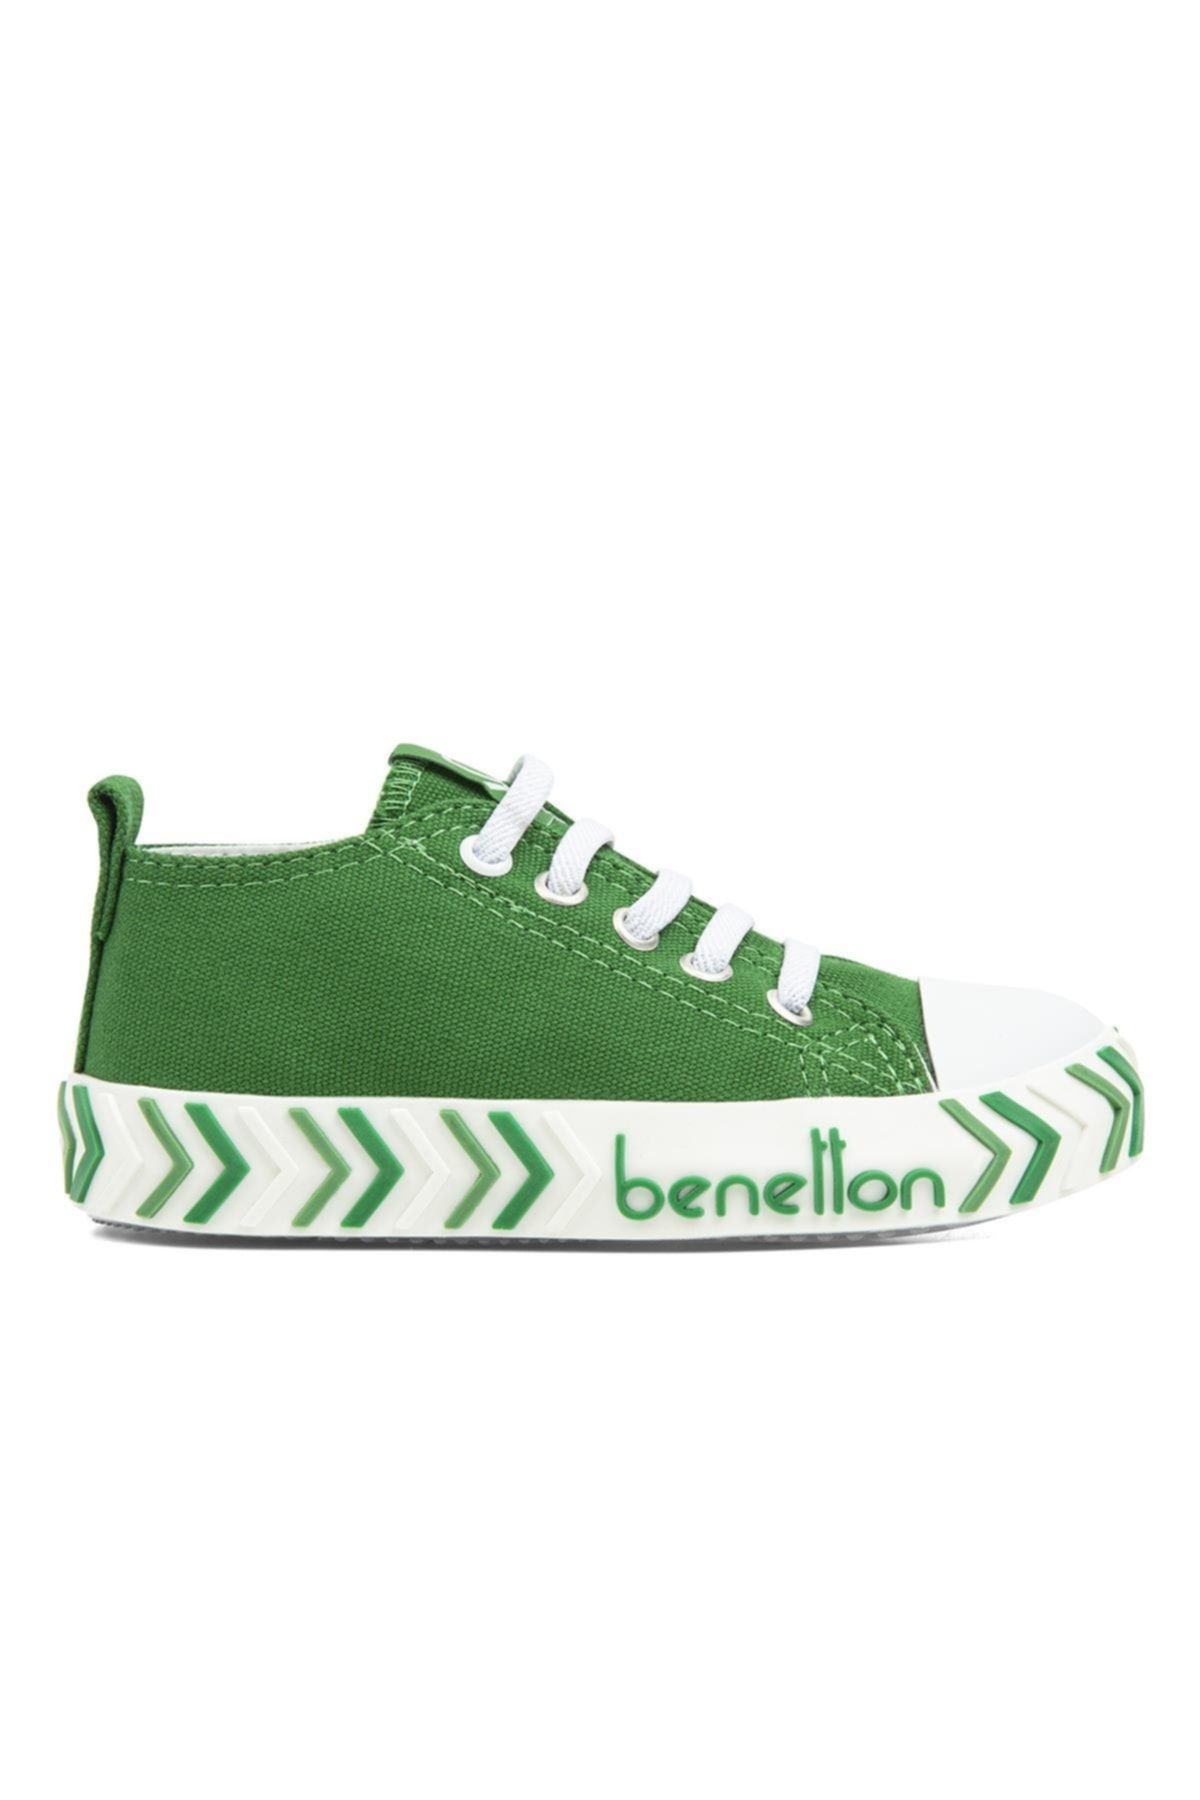 Benetton Bn-30641 - 3394 Yesil